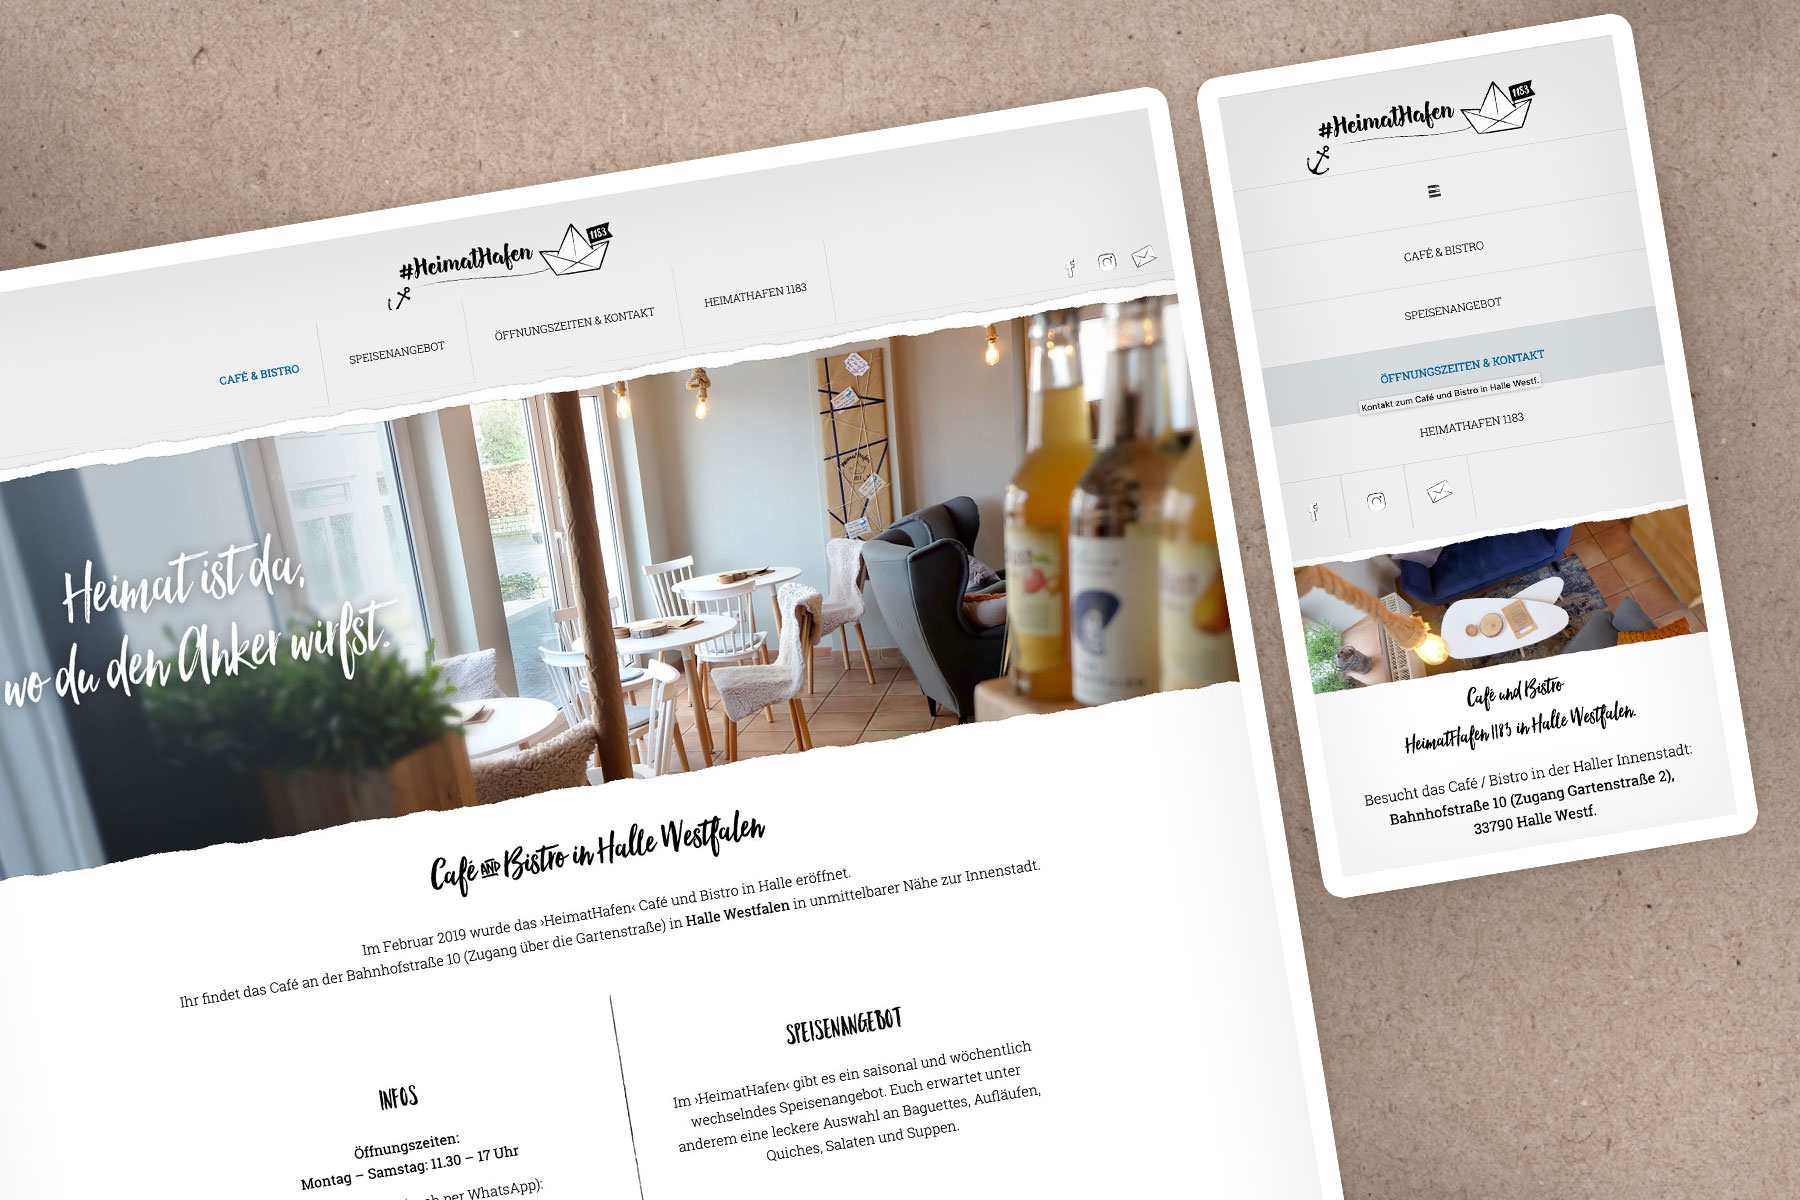 Website für Cafe und Bistro in Halle Westfalen